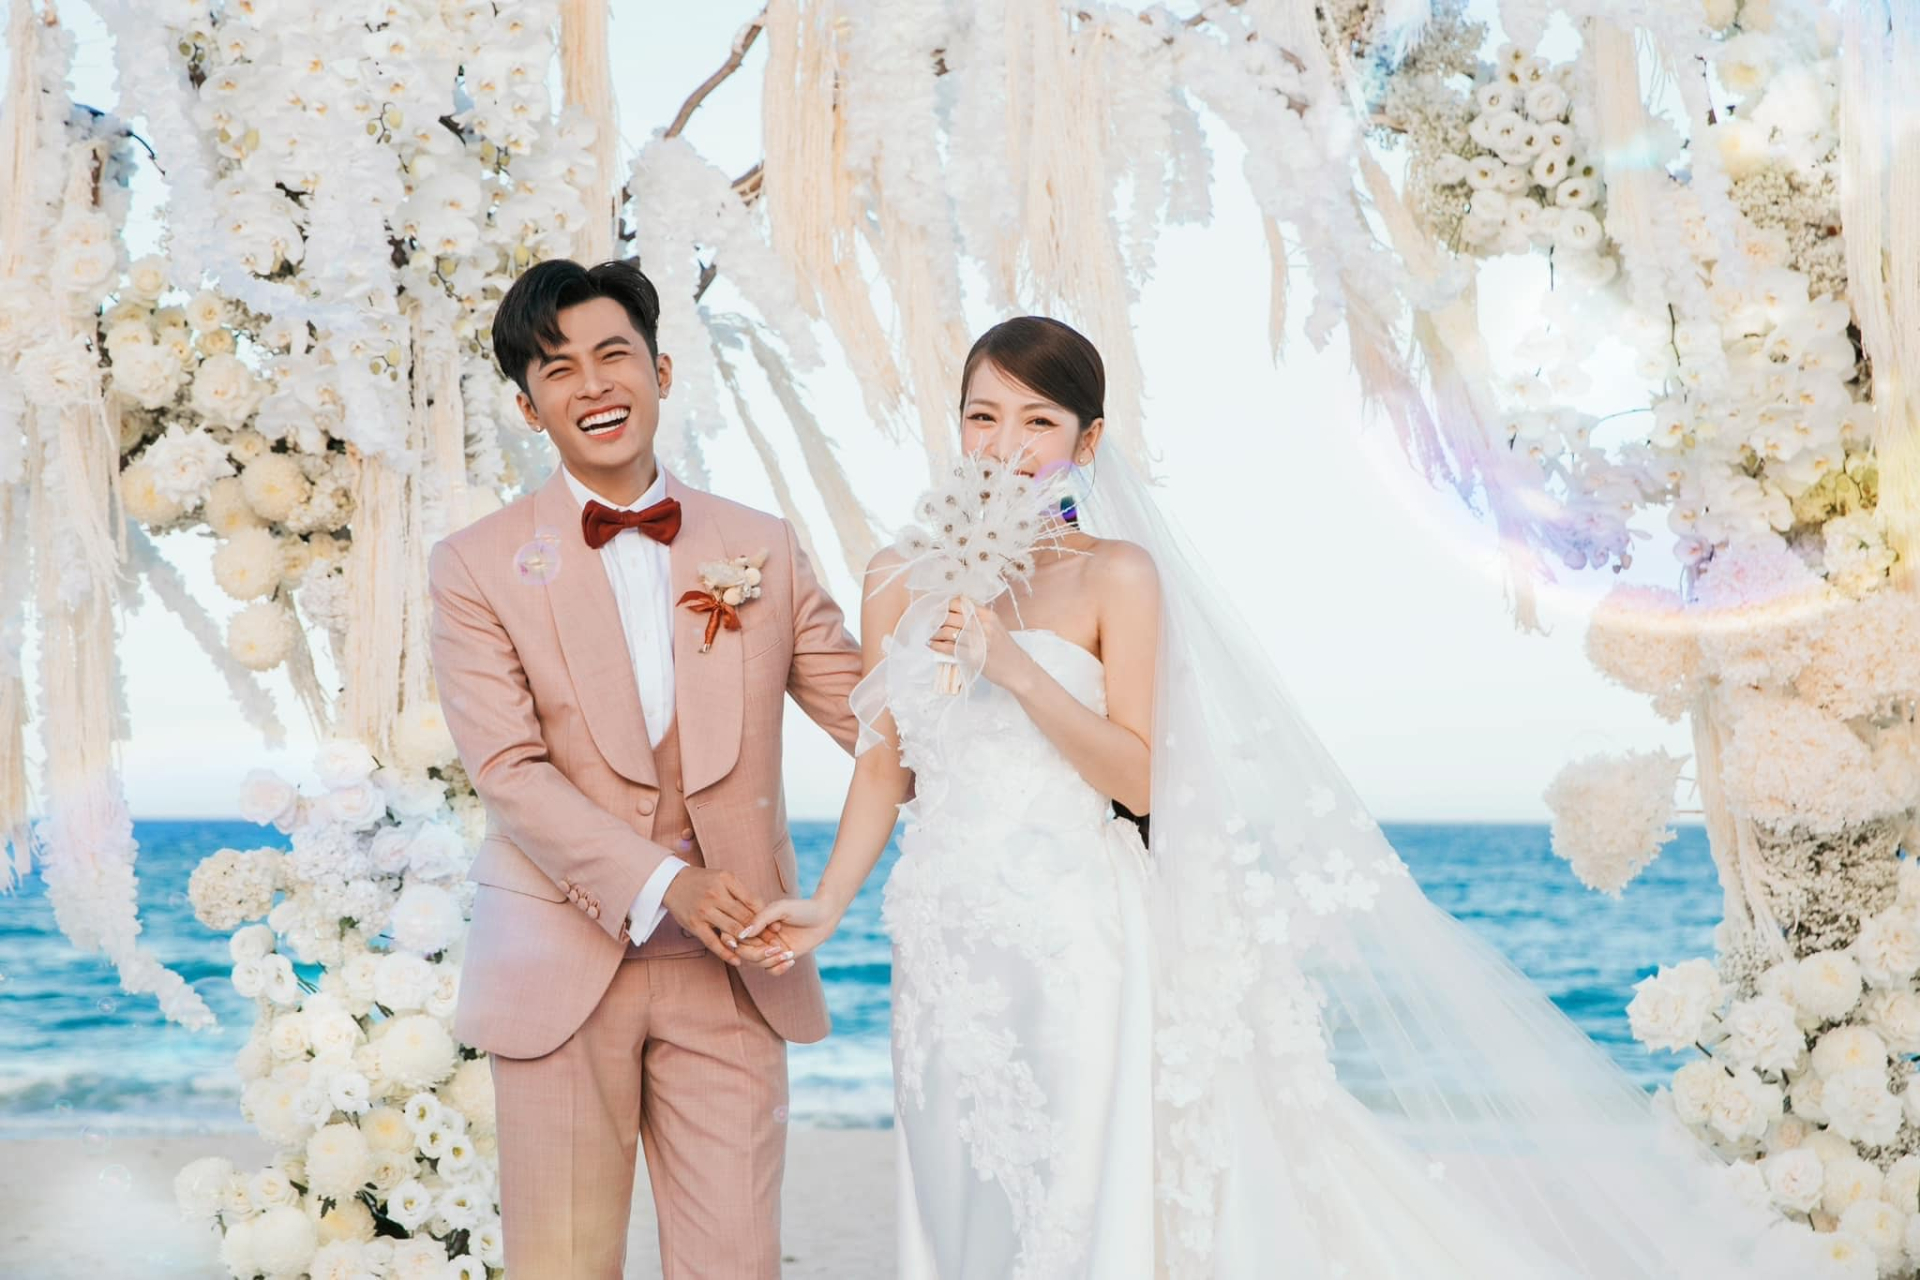 Hòa Minzy khoe khoảnh khắc đẹp như tranh trong đám cưới Puka - Gin Tuấn Kiệt, bất ngờ với danh tính người chụp - ảnh 1